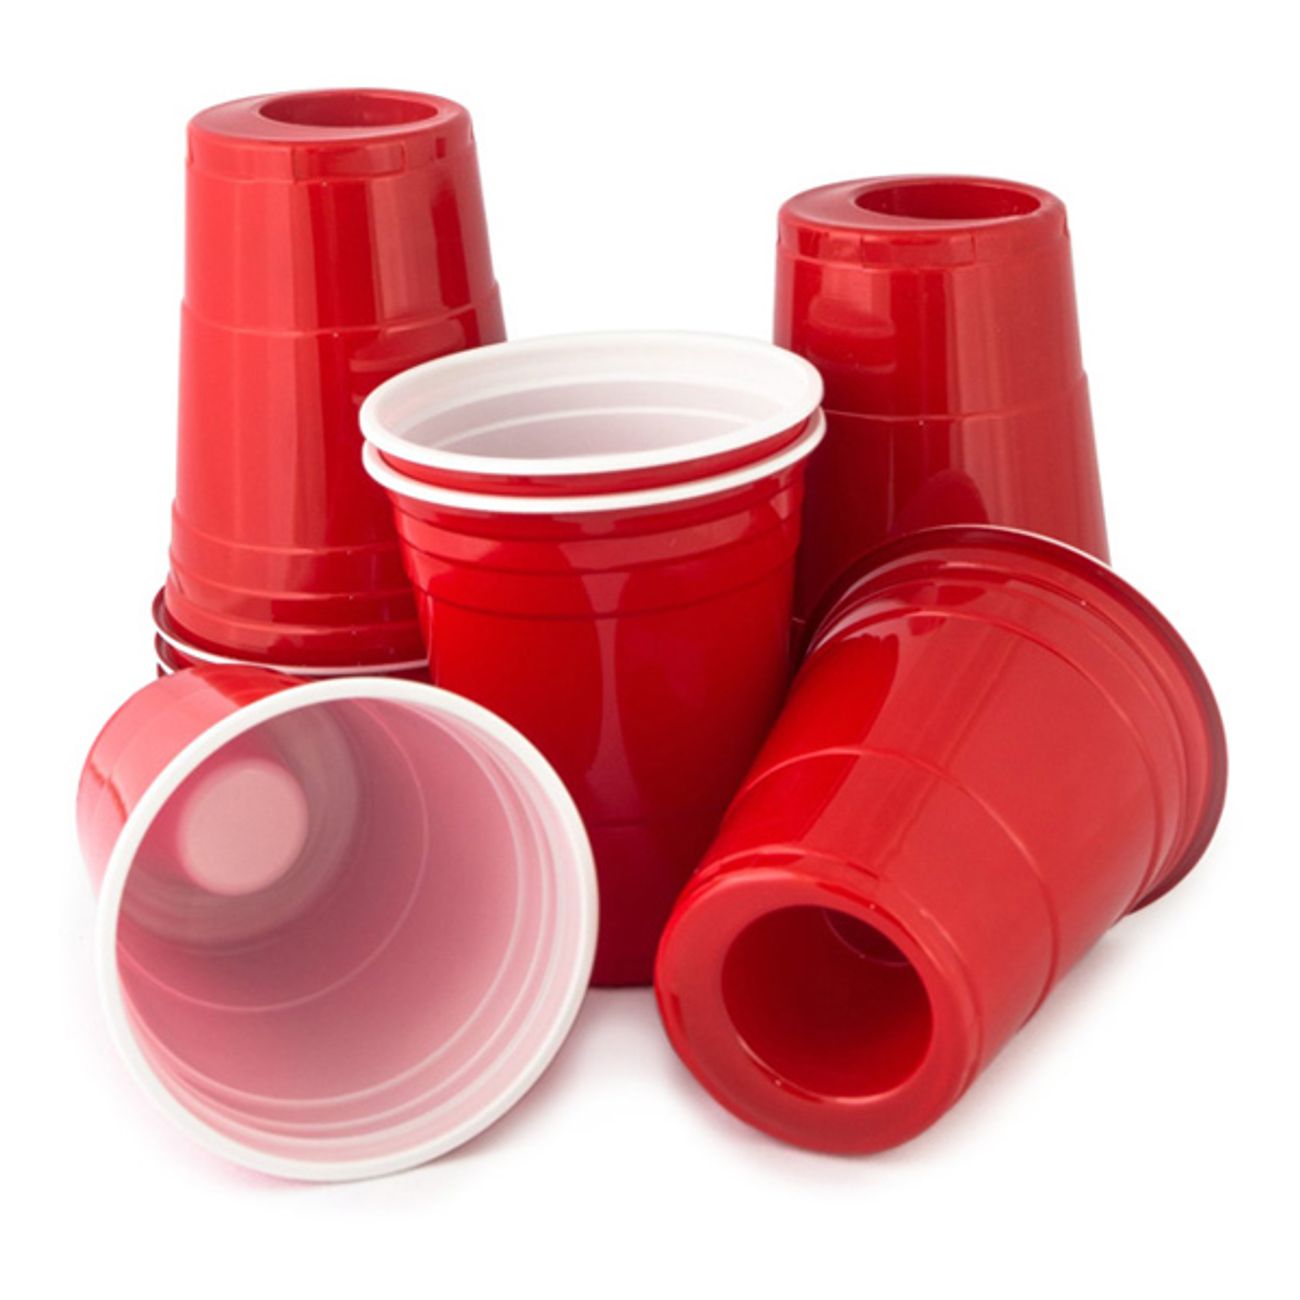 american-party-cup-shotglas-2